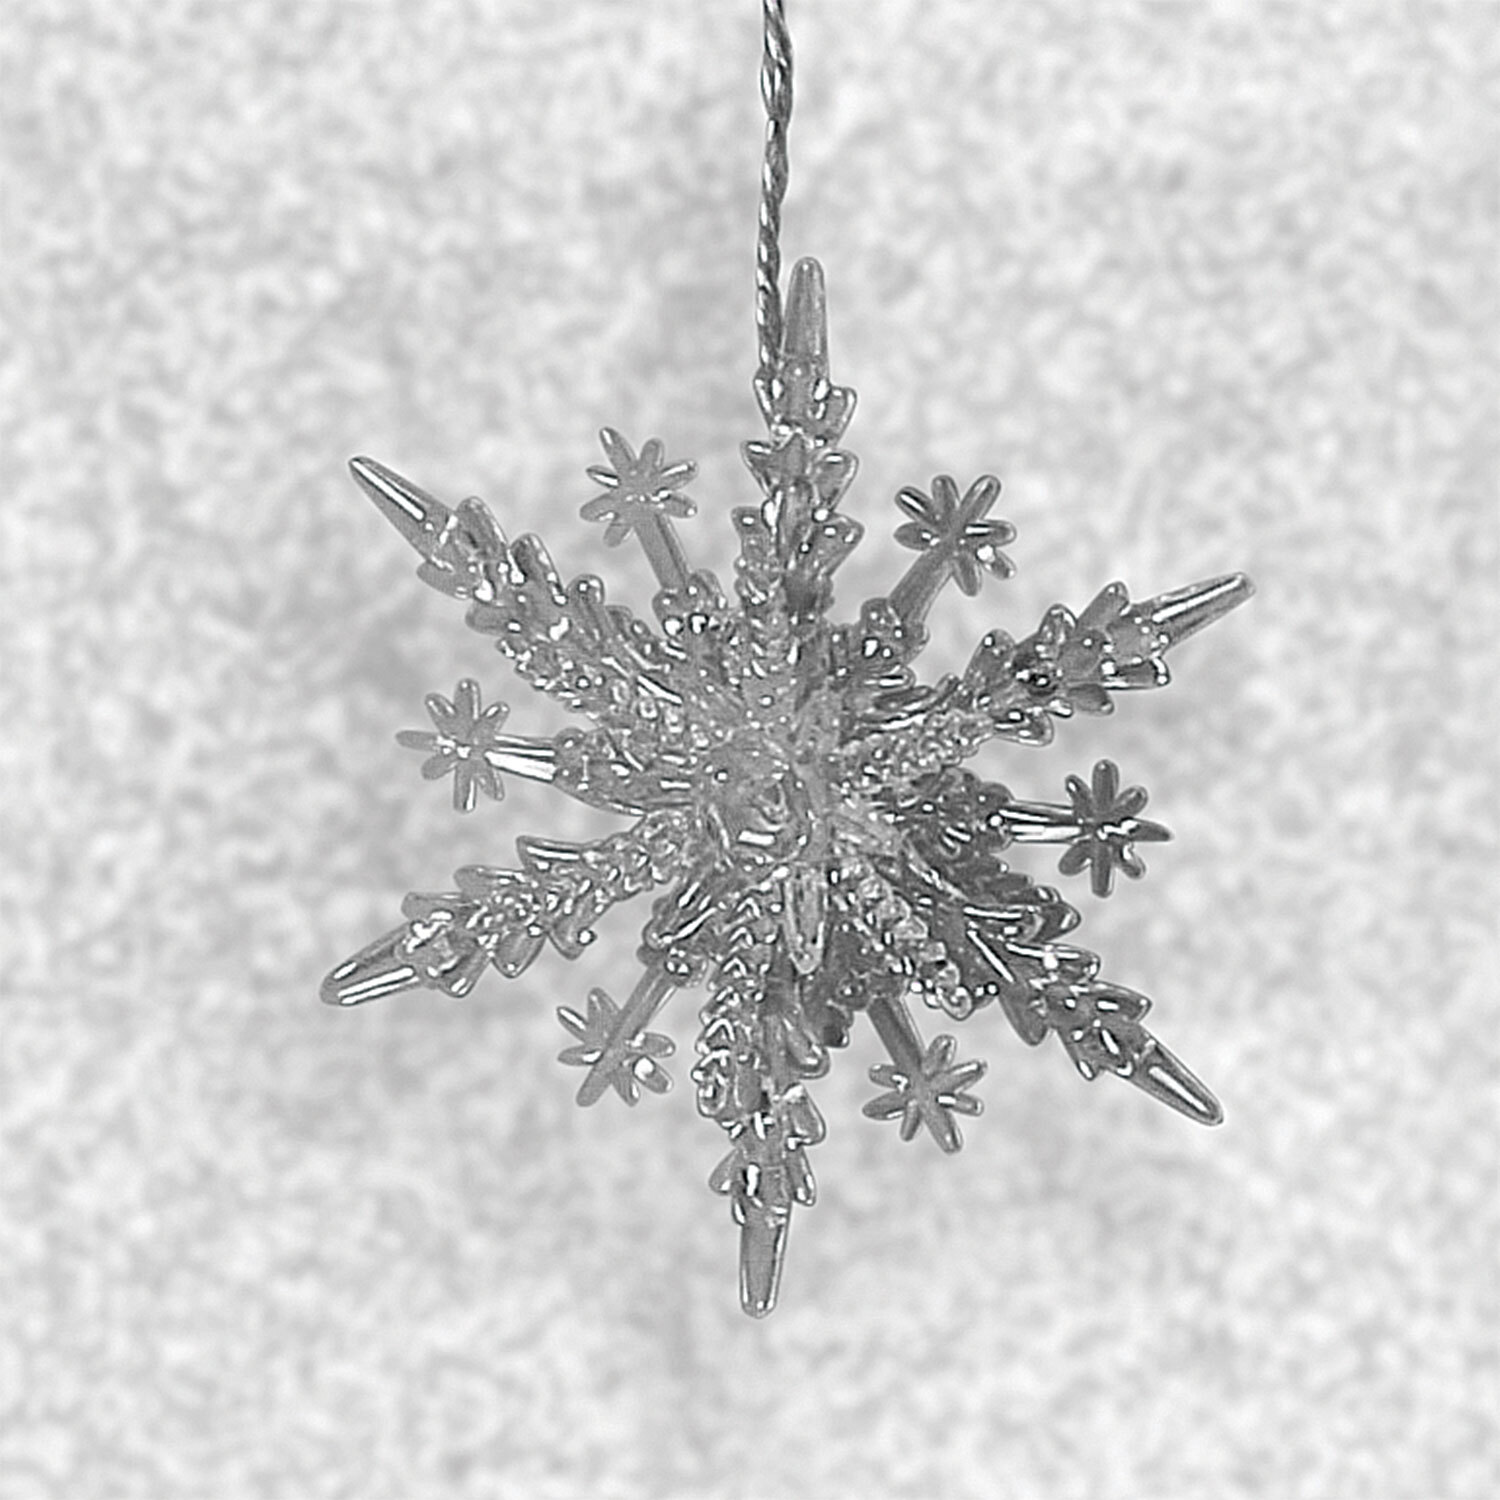 3D Snowflake 8 LED Curtain Light Image 2